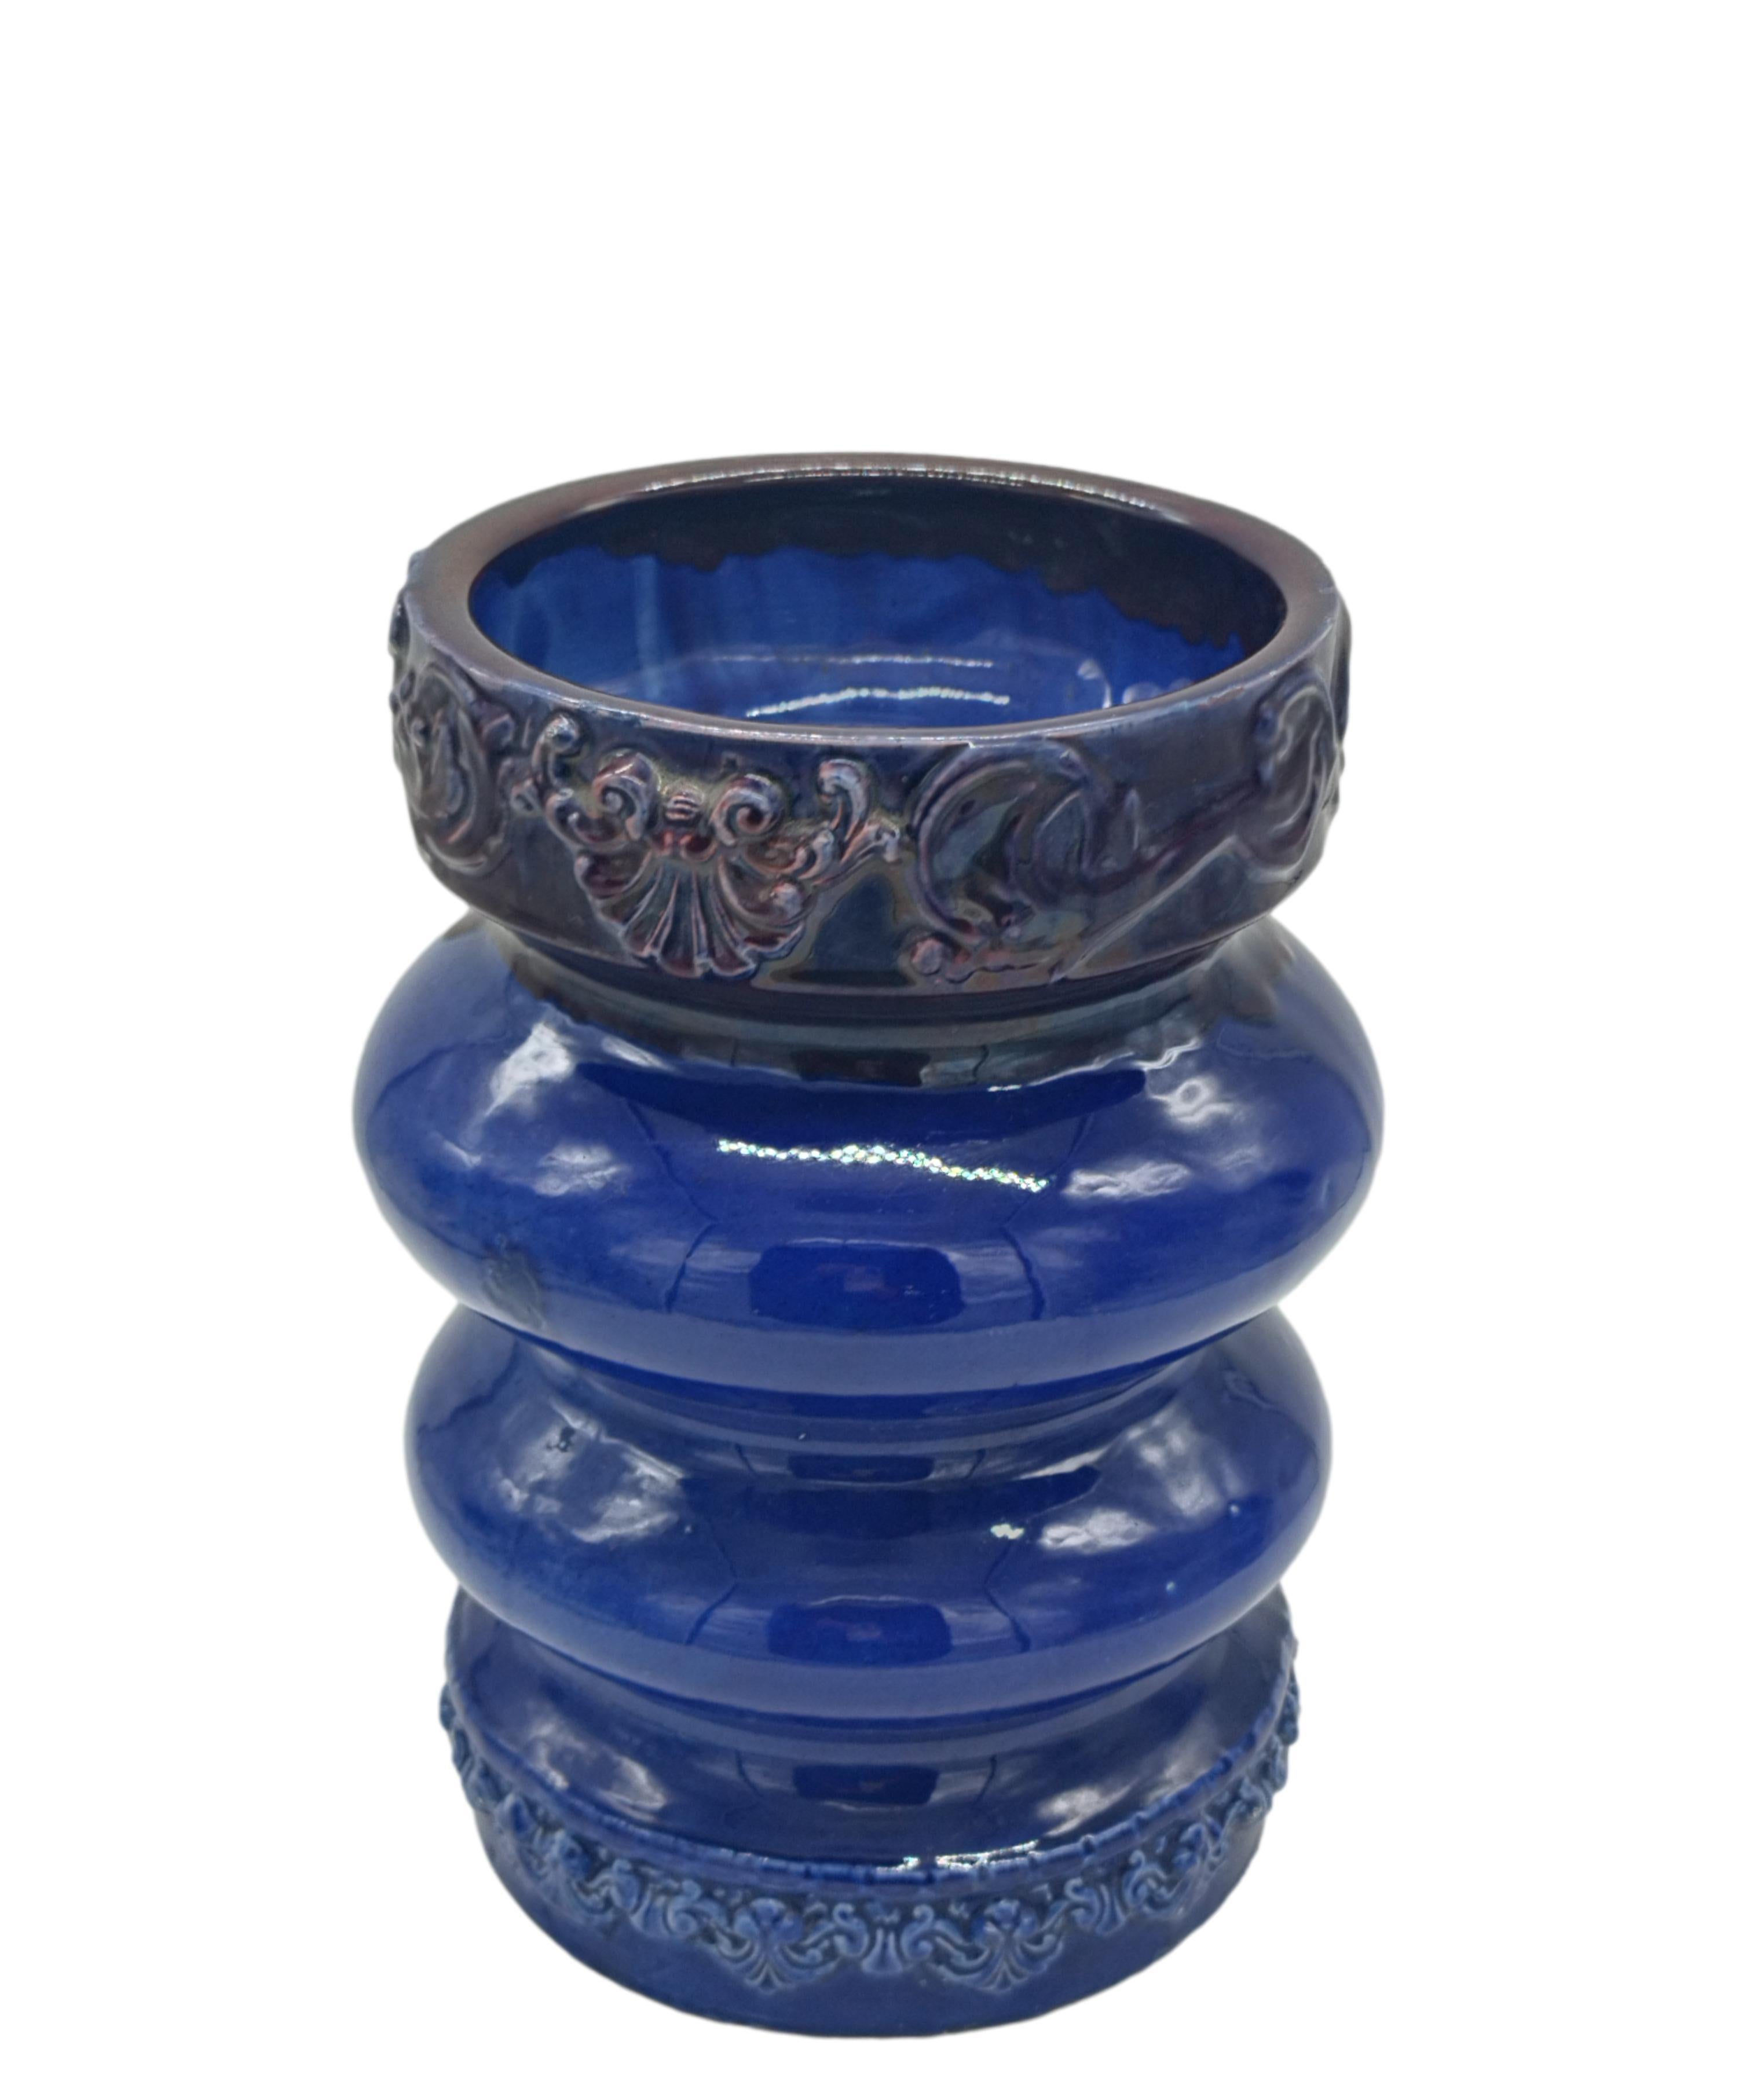 Fabriqué à la main en céramique sur un tour de potier selon des techniques traditionnelles, ce vase est savamment émaillé en plusieurs couches utilisant différentes nuances de bleu pour obtenir cette puissante nuance de bleu cobalt. En raison de sa